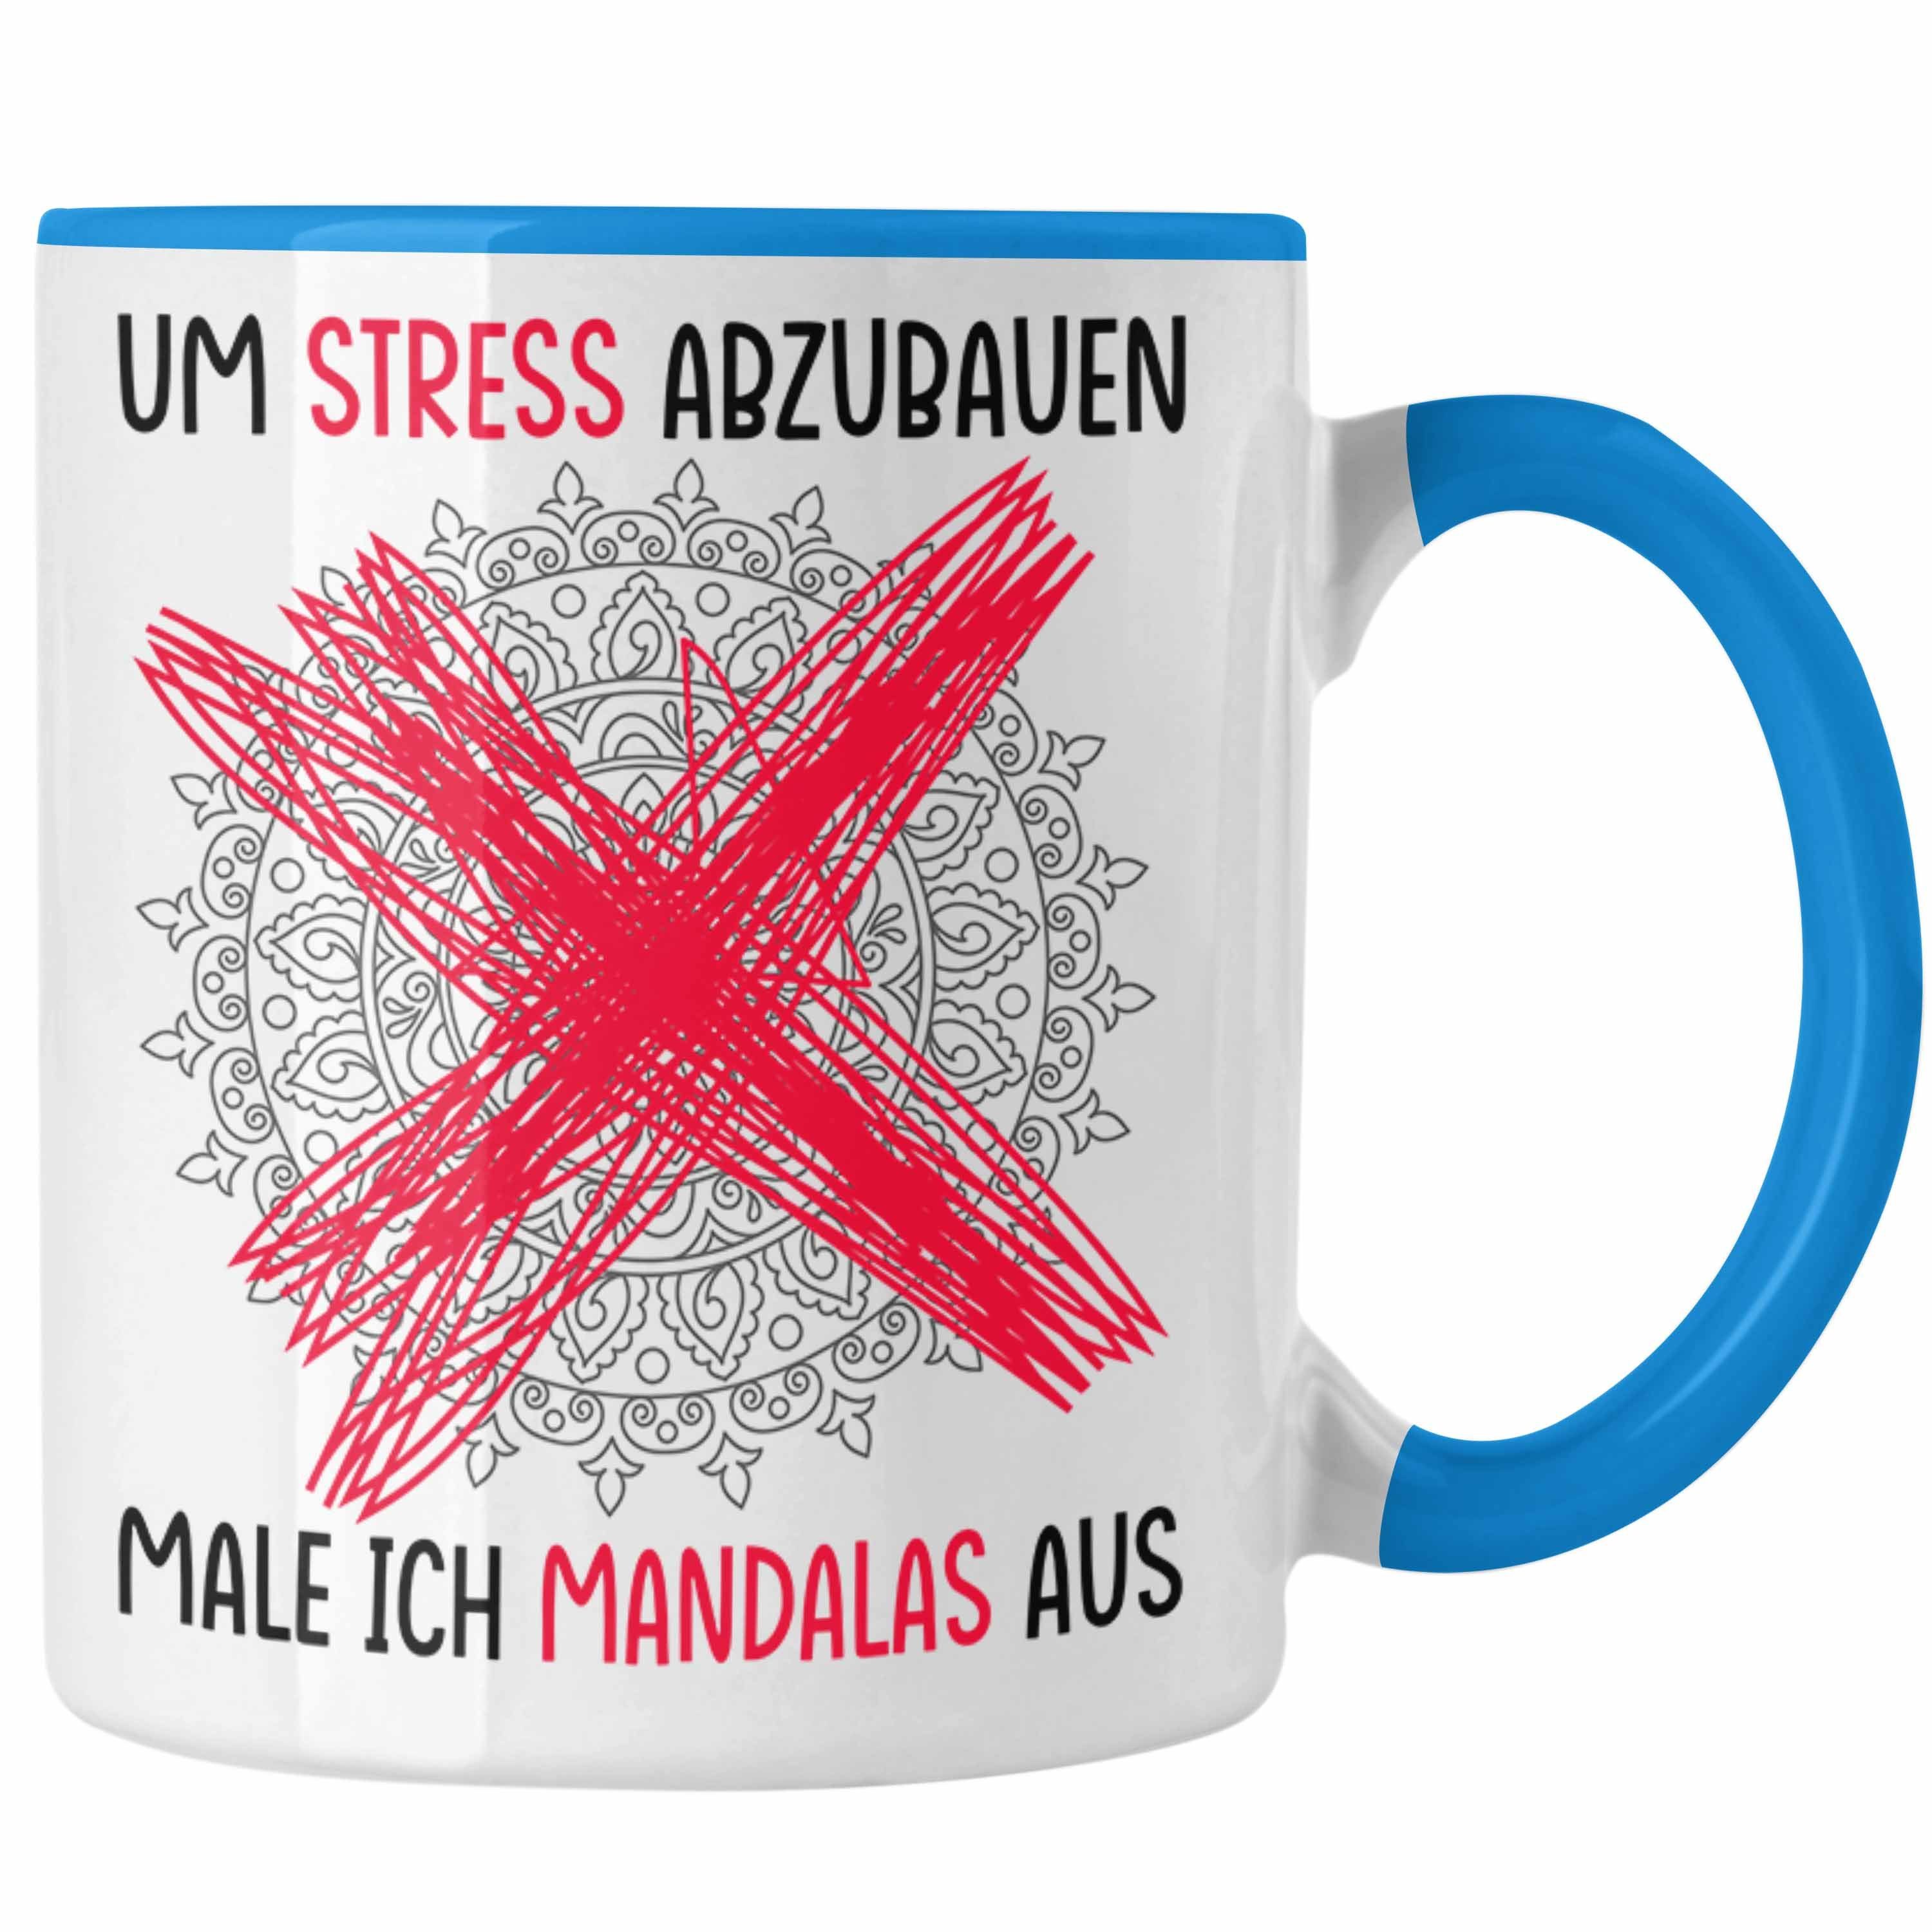 Trendation Tasse Lustige Tasse Geschenk Spruch Um Stress Abzubauen Male Ich Mandalas Au Blau